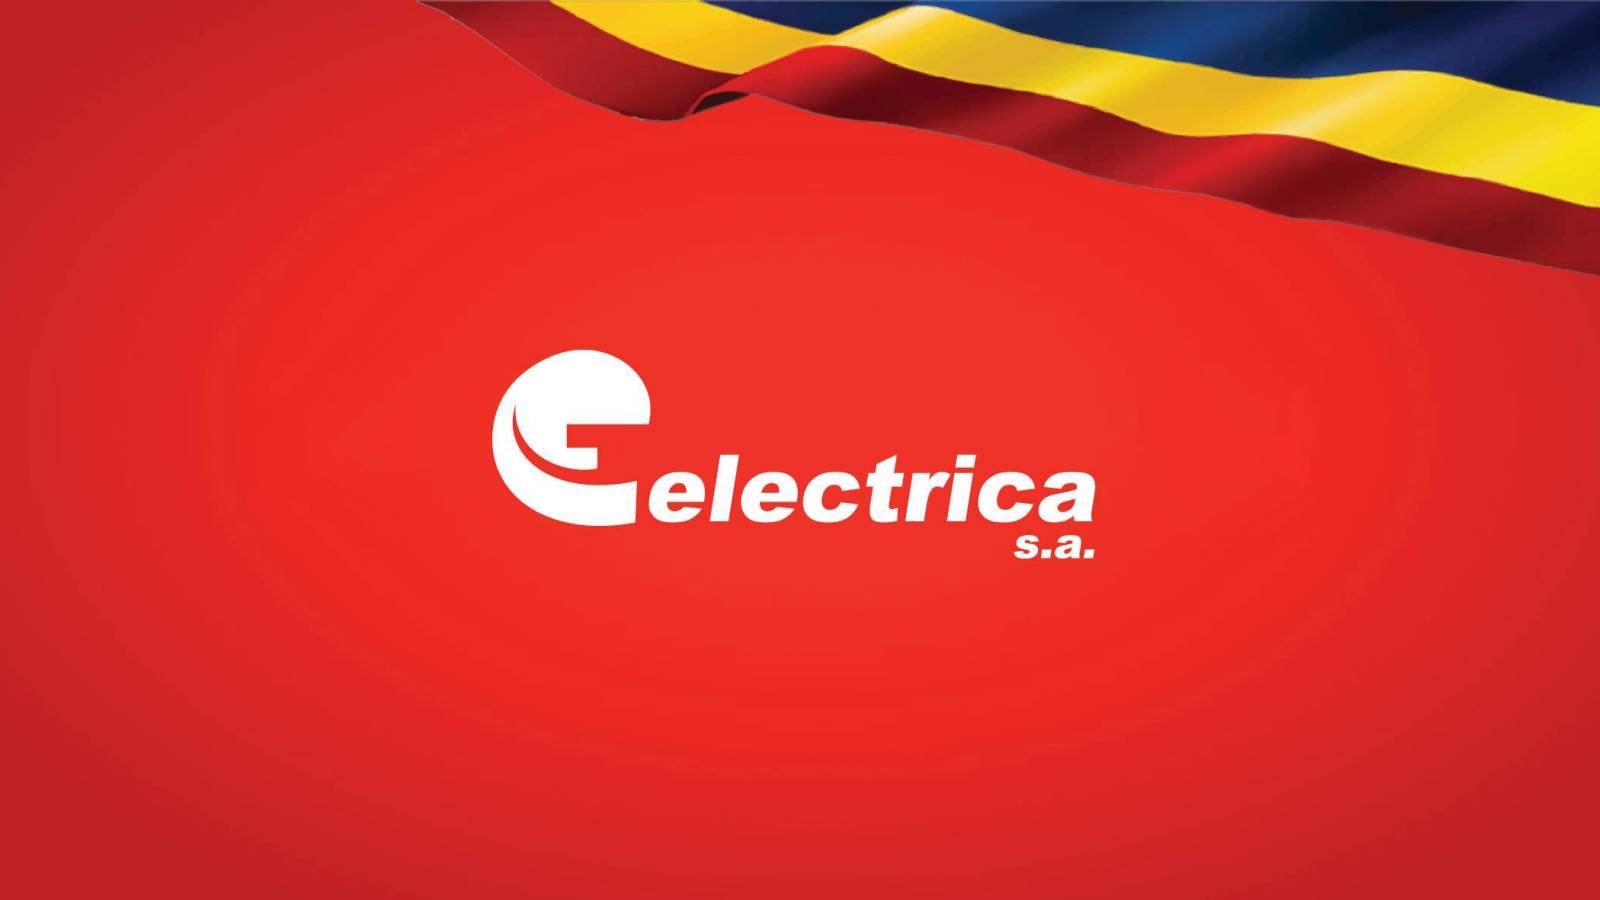 Electrica Data LAST MOMENT Zobacz OBOWIĄZEK Wszyscy klienci z Rumunii